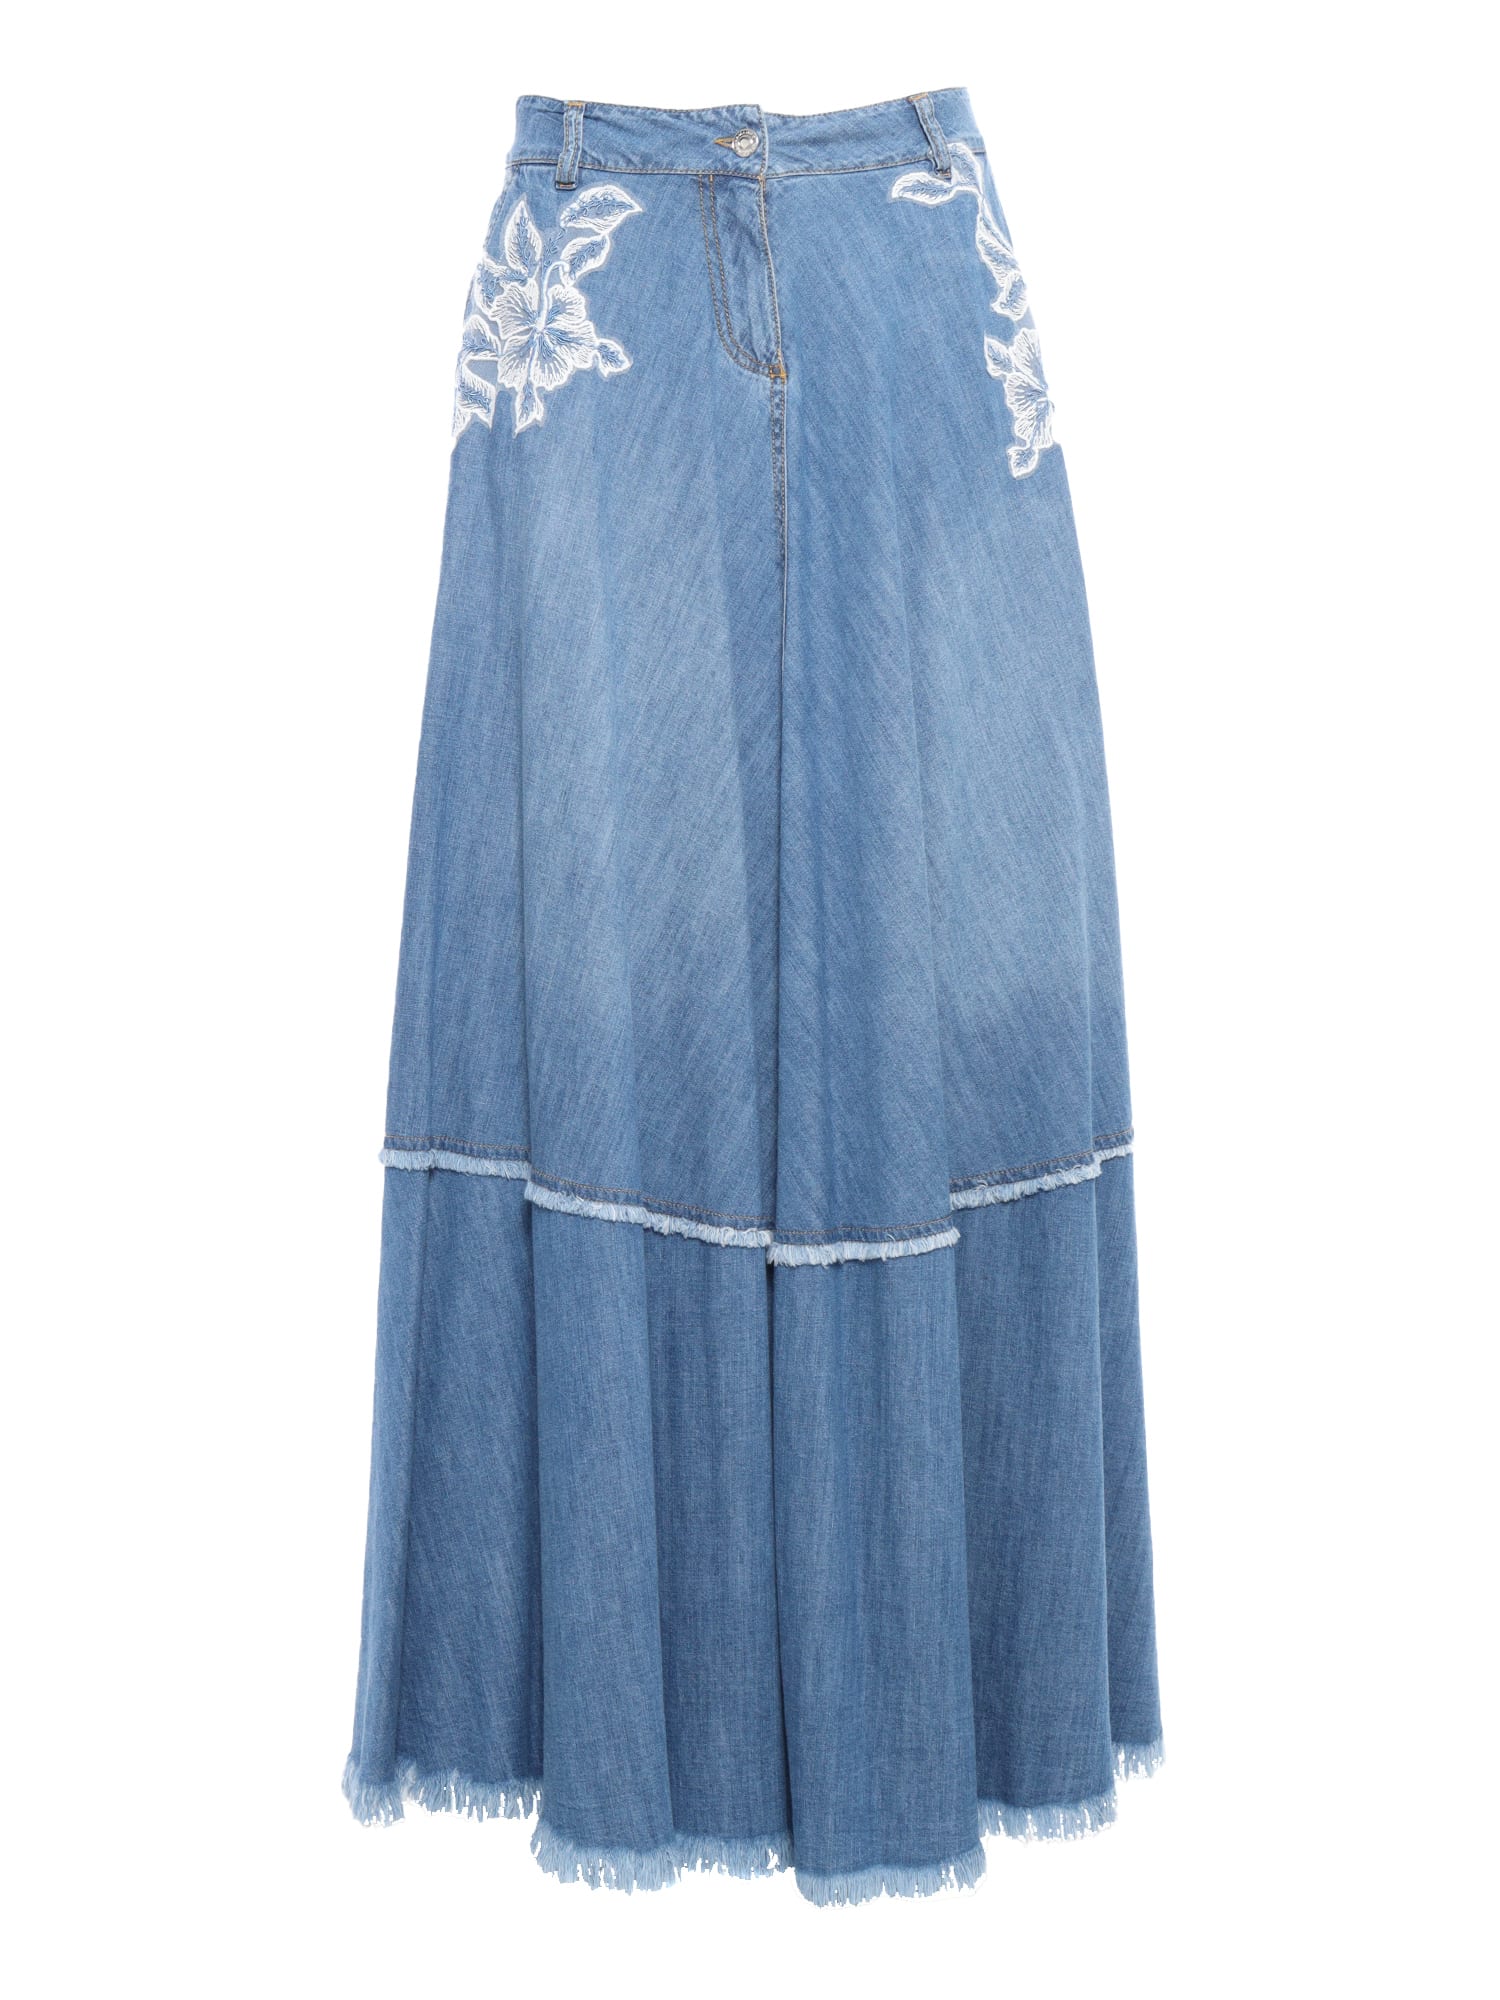 Ermanno Ermanno Scervino Long Denim Skirt In Light Blue